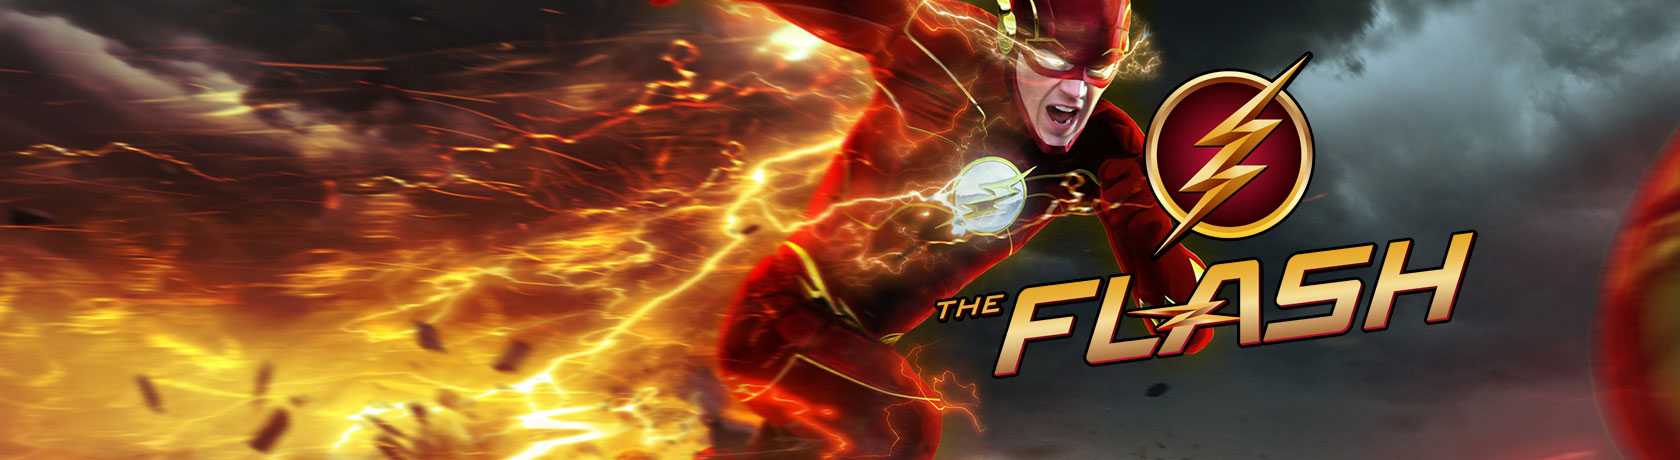 The Flash 5.Sezon 1.Bölüm izle